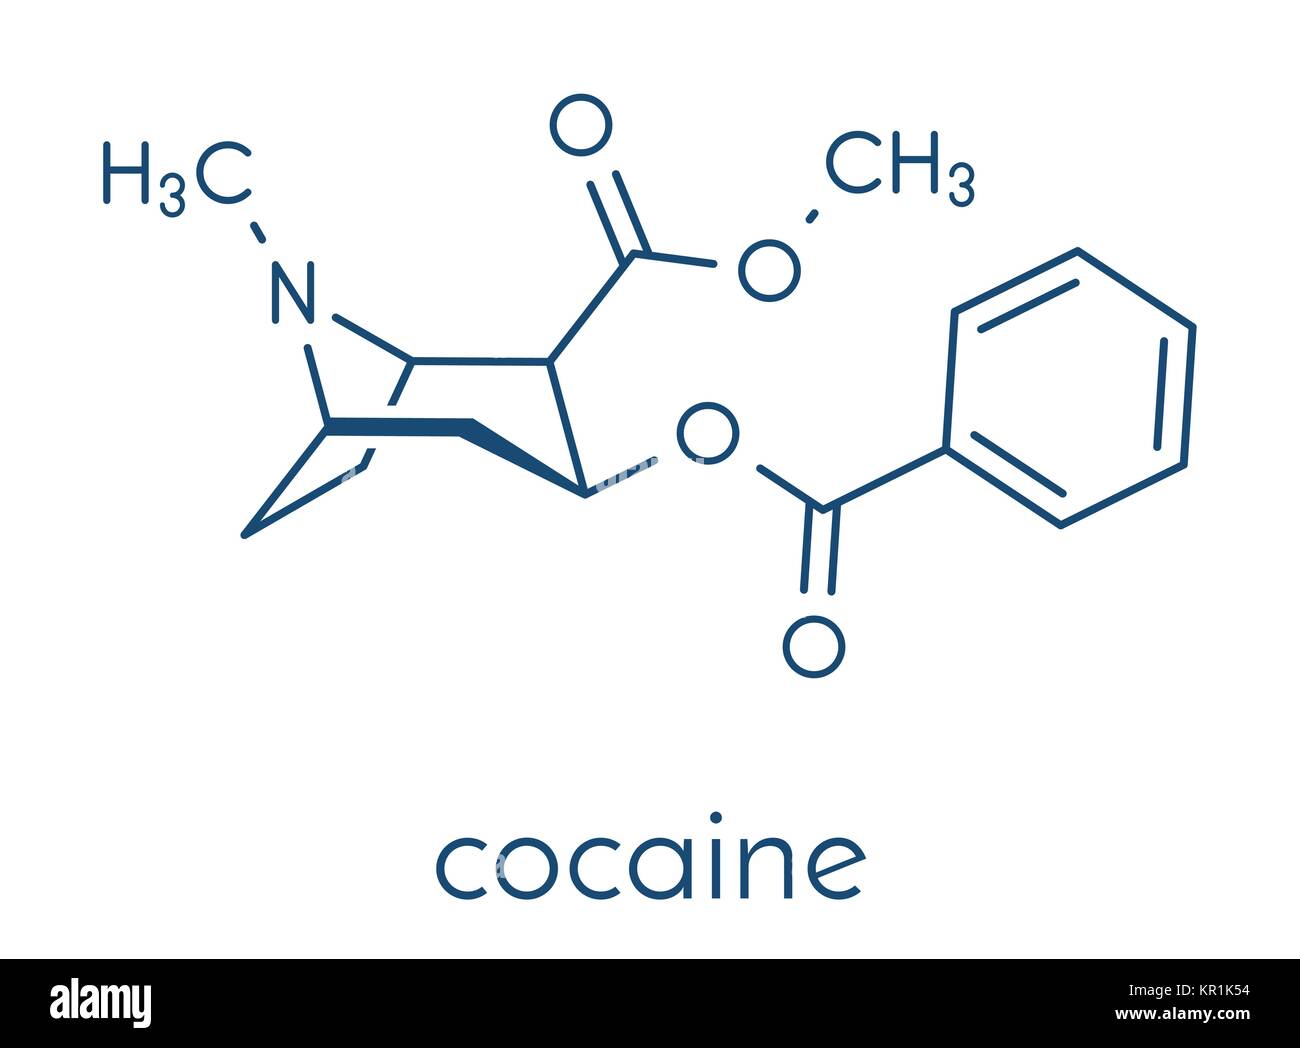 La cocaïne drogue stimulante, la molécule. Utilisé comme sel ou comme base libre (Crack, Freebase). Formule topologique. Illustration de Vecteur